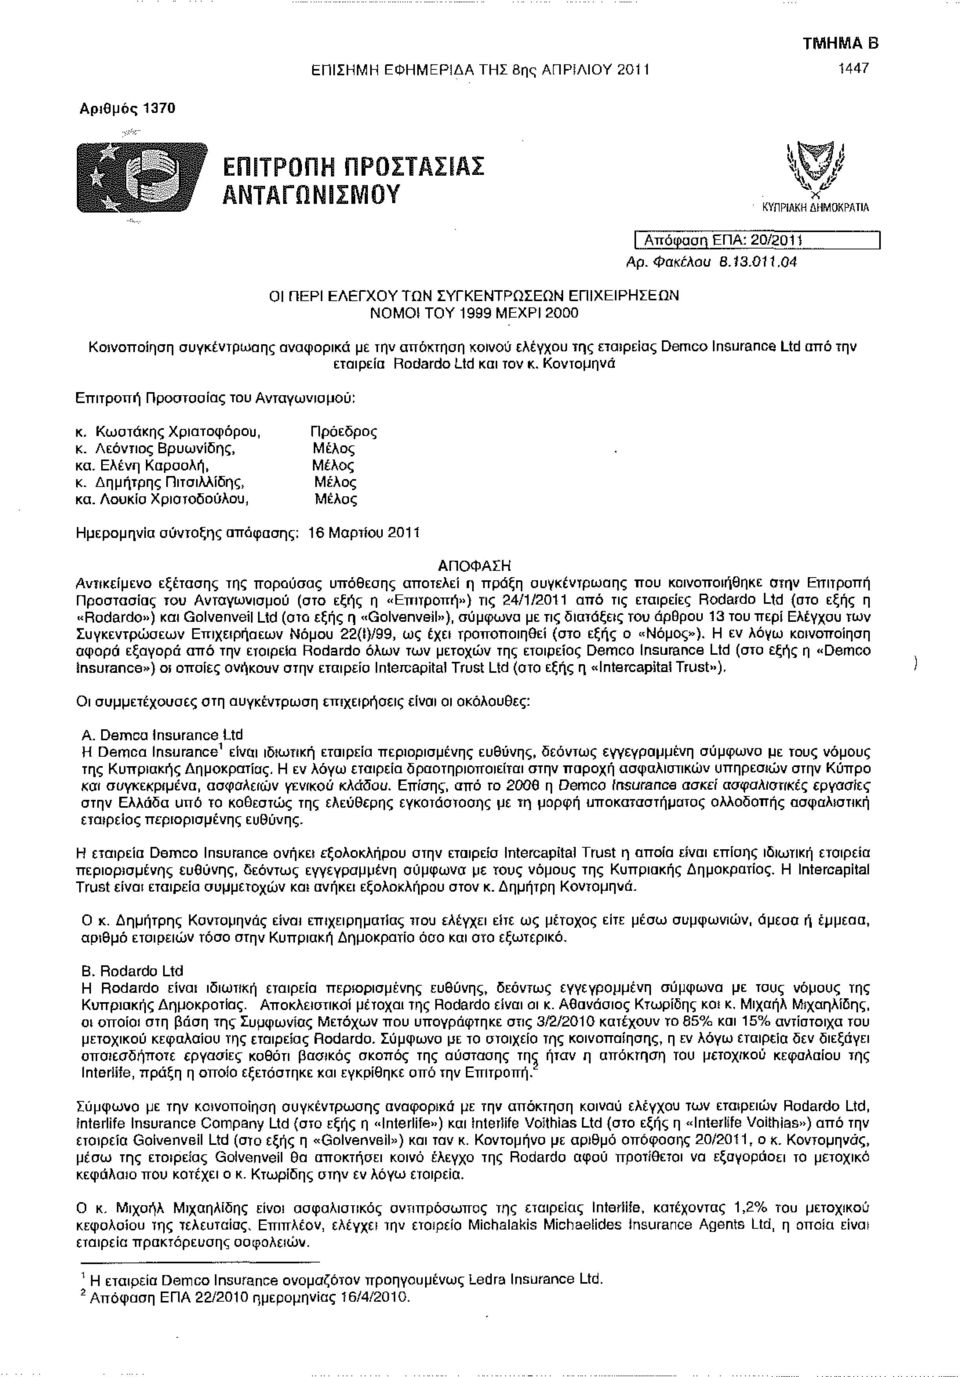 Λούκια Χριστοδούλου, Μέλος Ημερομηνία σύνταξης απόφασης: 16 Μαρτίου 2011 εταιρεία Rodardo Ltd και τον κ.